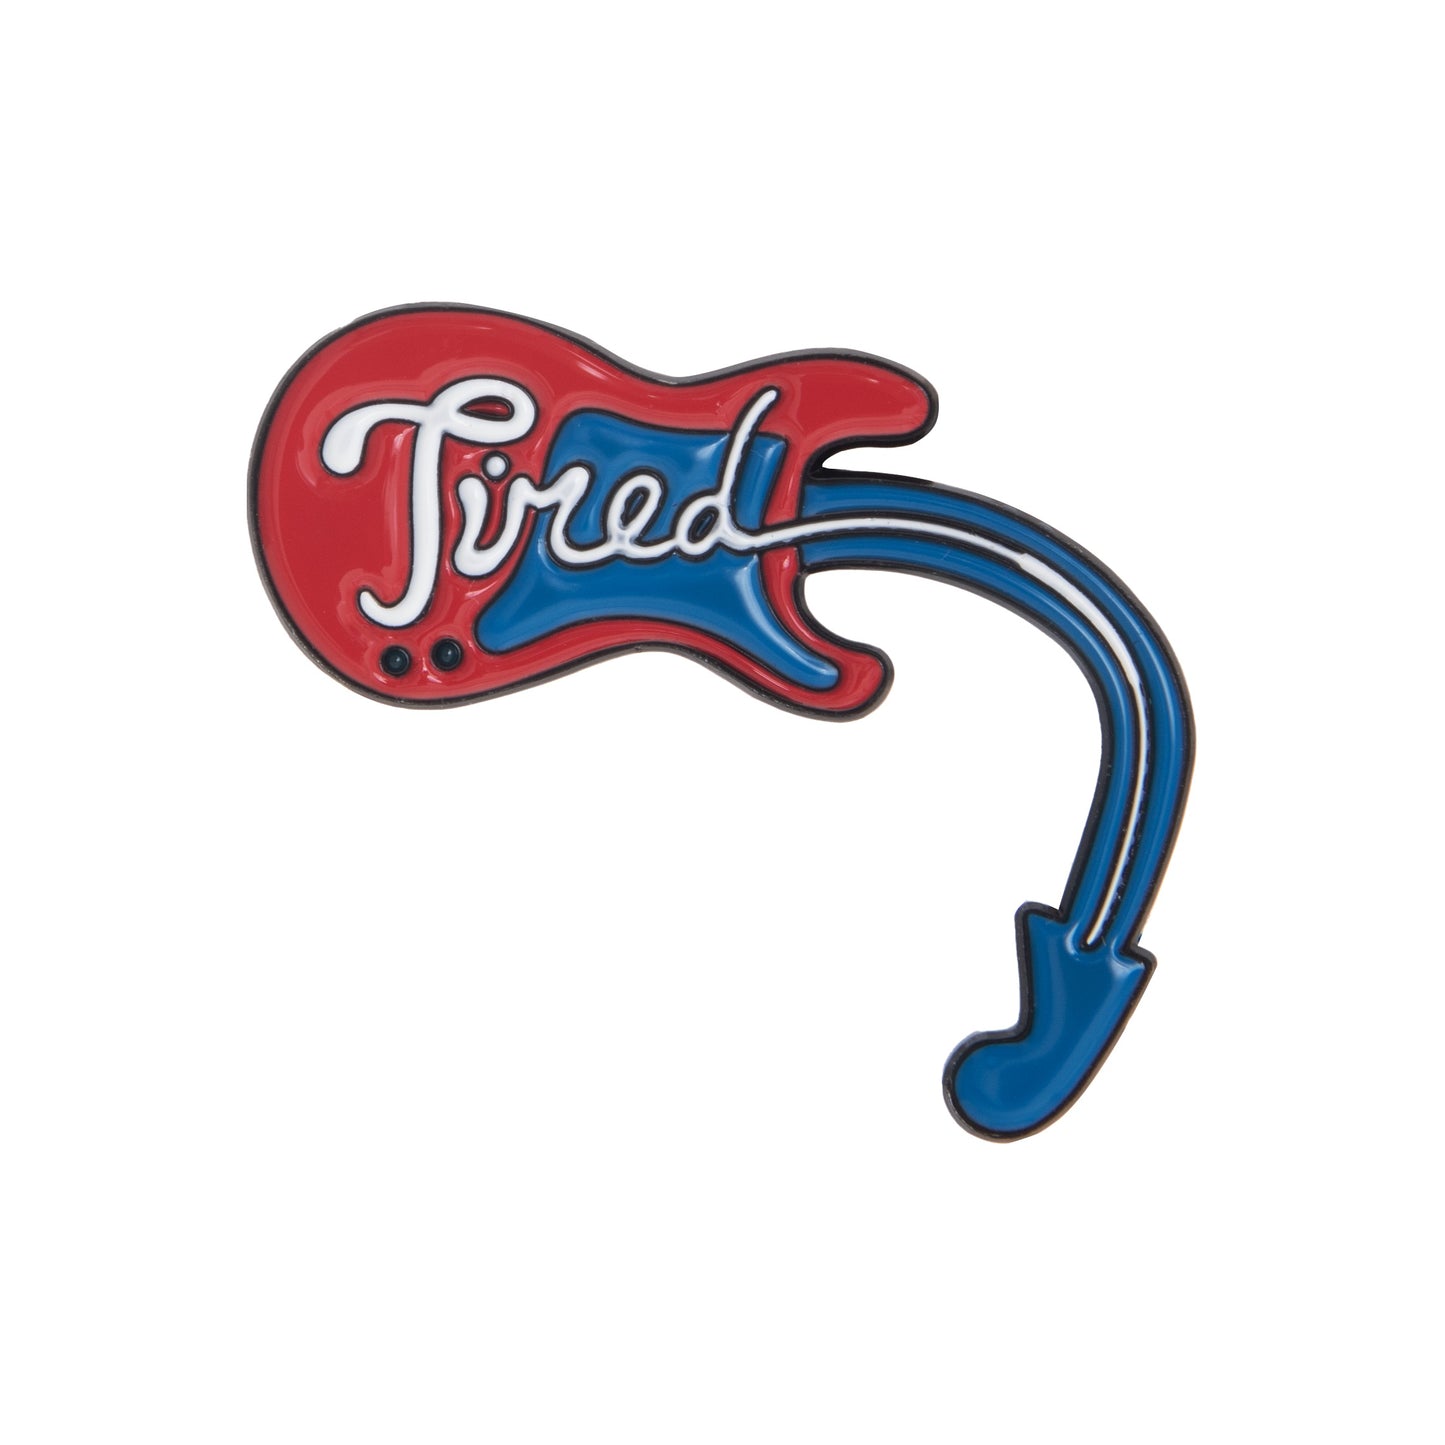 Tired Music Pin Set